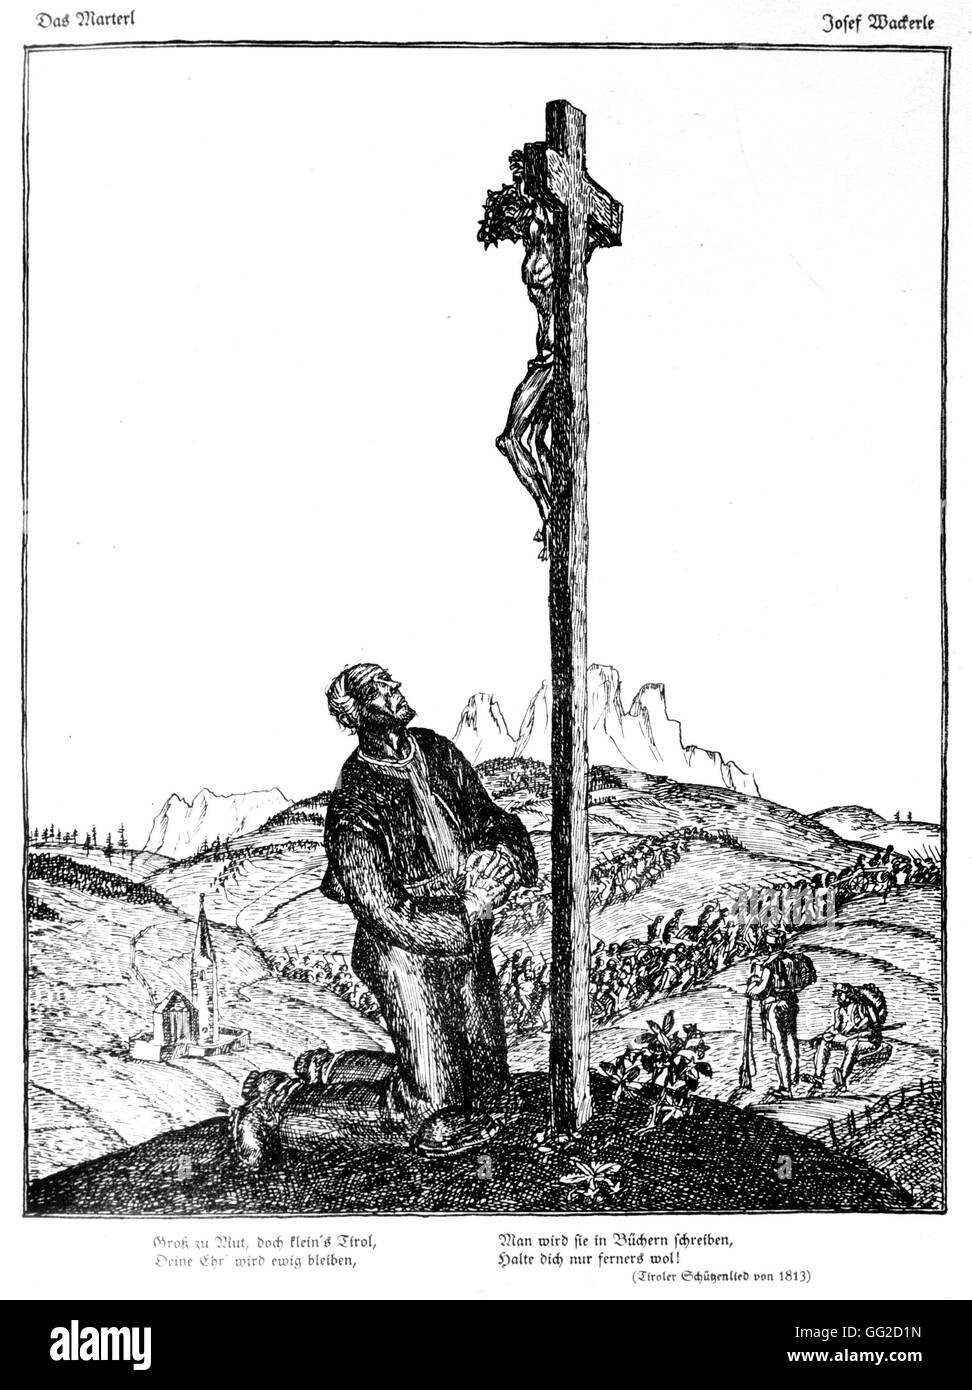 Zeichnung von Josef Wackerle in "Wieland" Folter 1915-1916 Deutschland - Weltkrieg B.D.I.C. Stockfoto